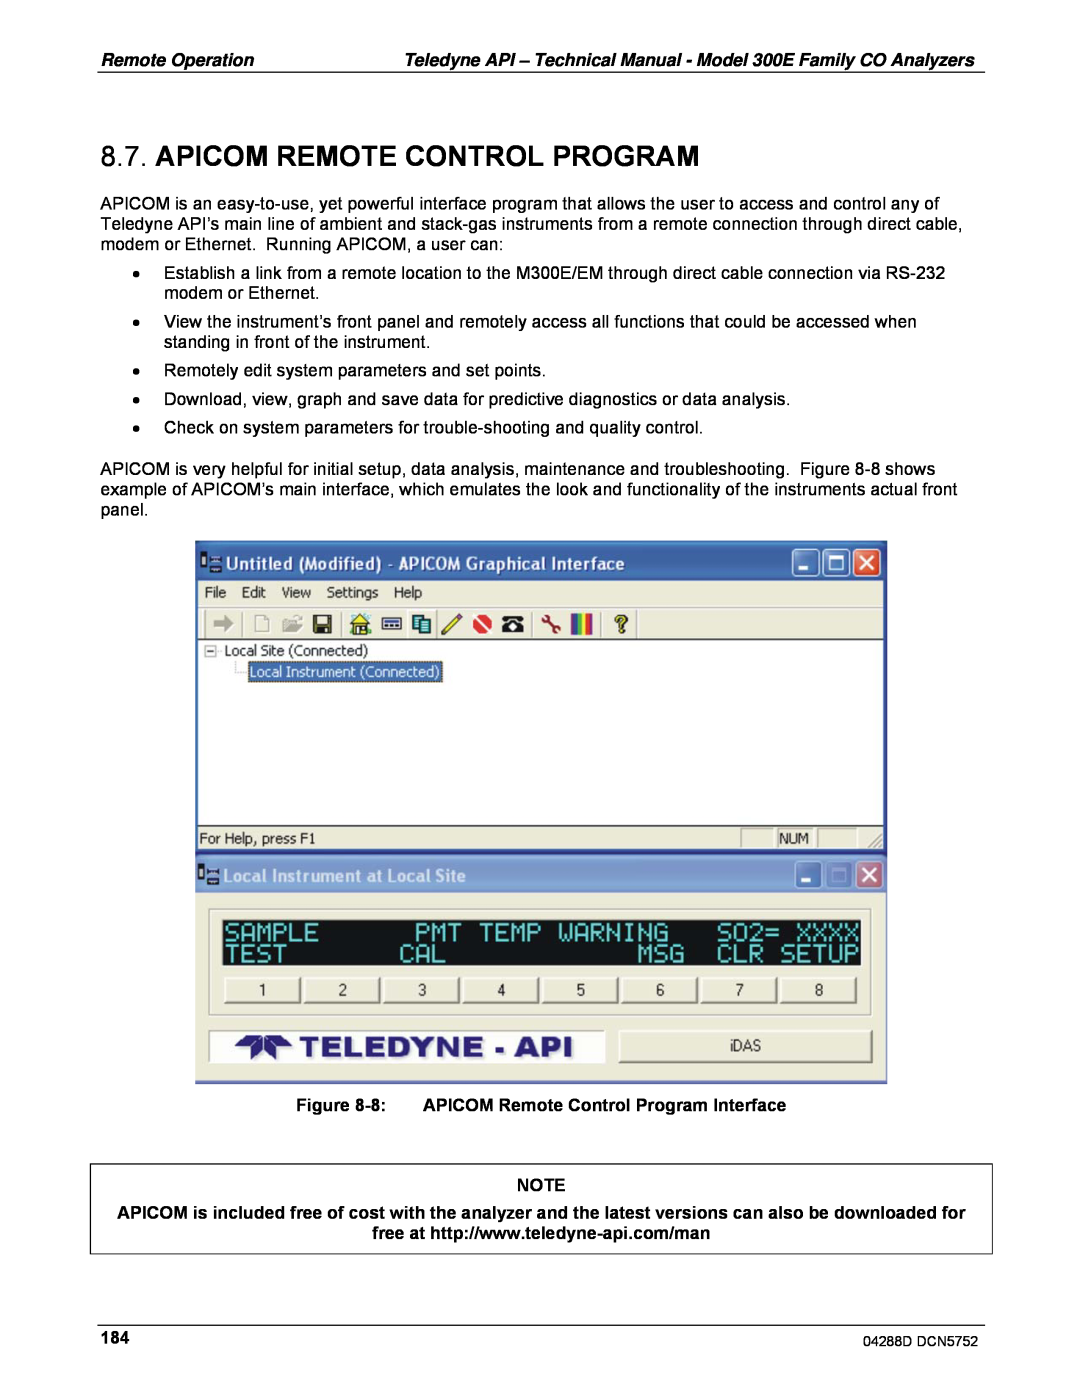 Teledyne M300EM operation manual Apicom Remote Control Program 